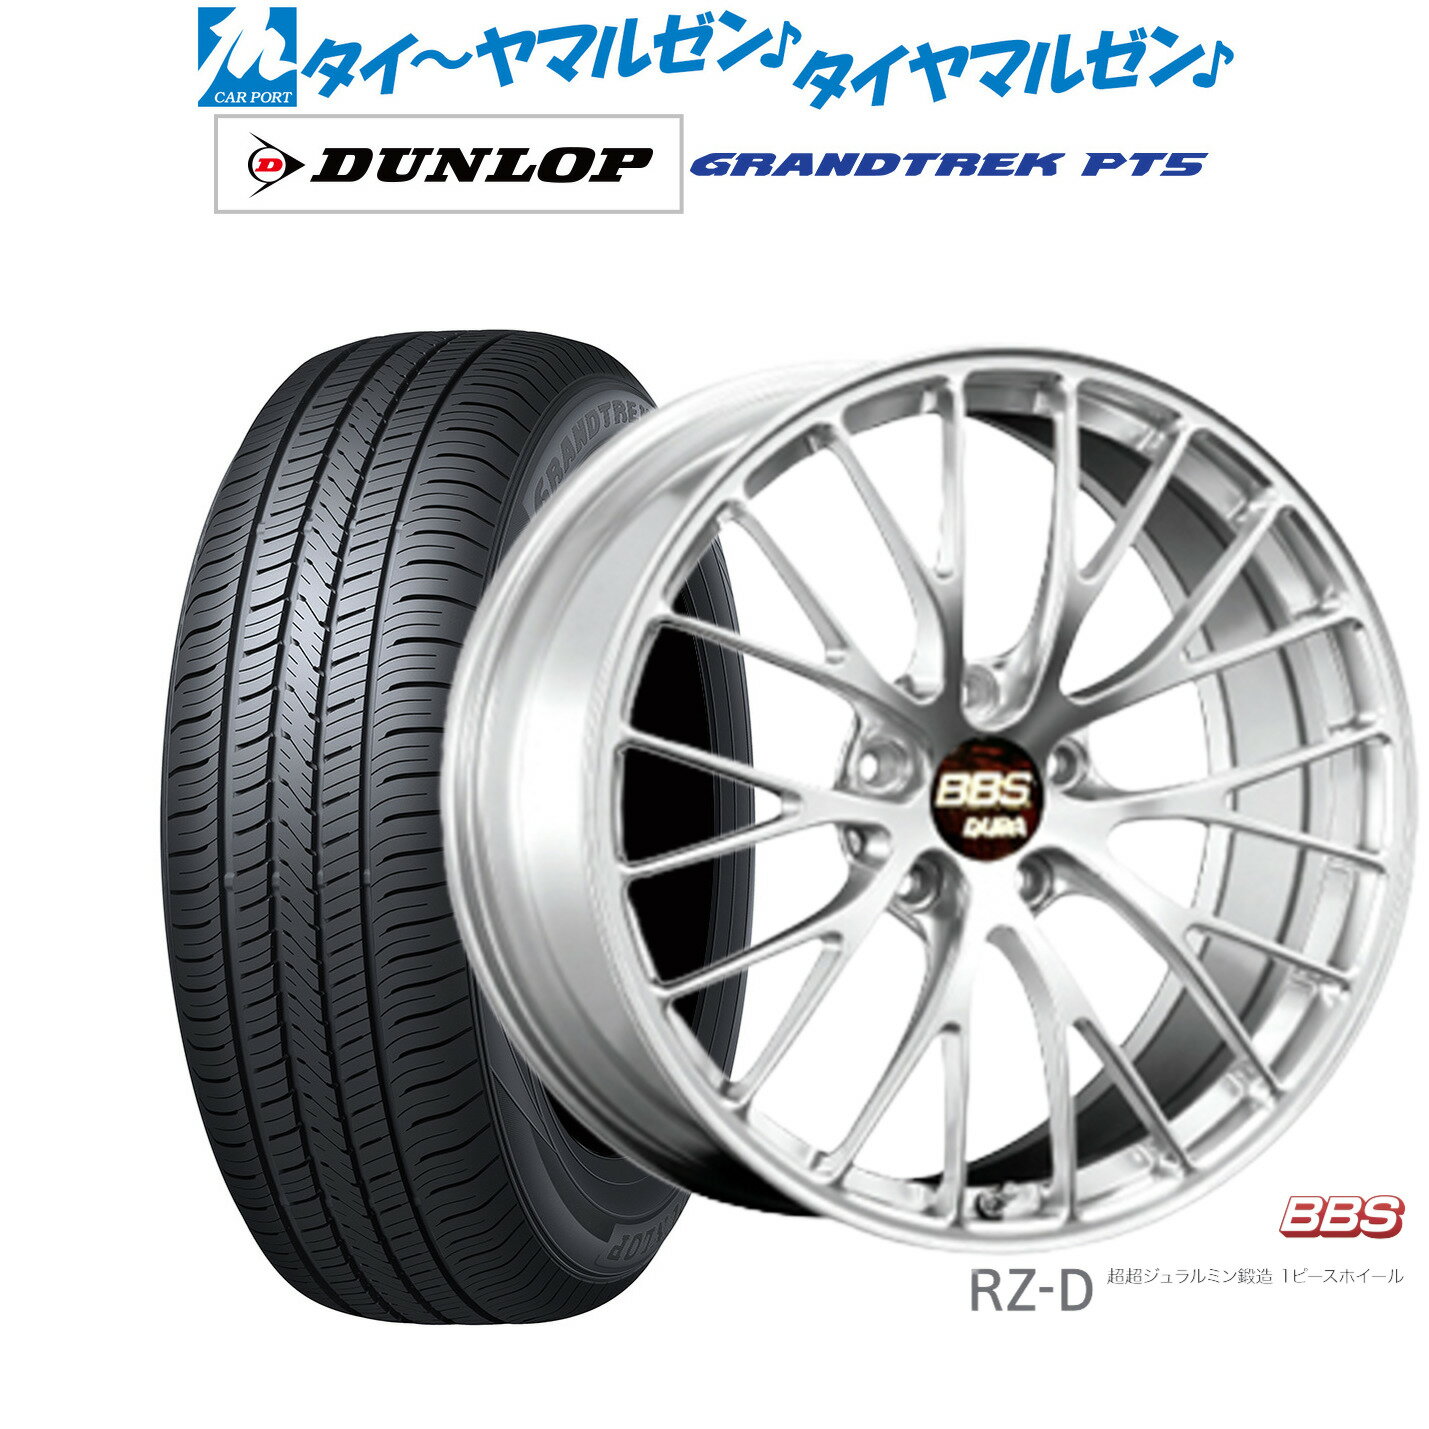 新品 サマータイヤ ホイール4本セットBBS JAPAN RZ-D20インチ 8.5Jダンロップ グラントレック PT5255/45R20